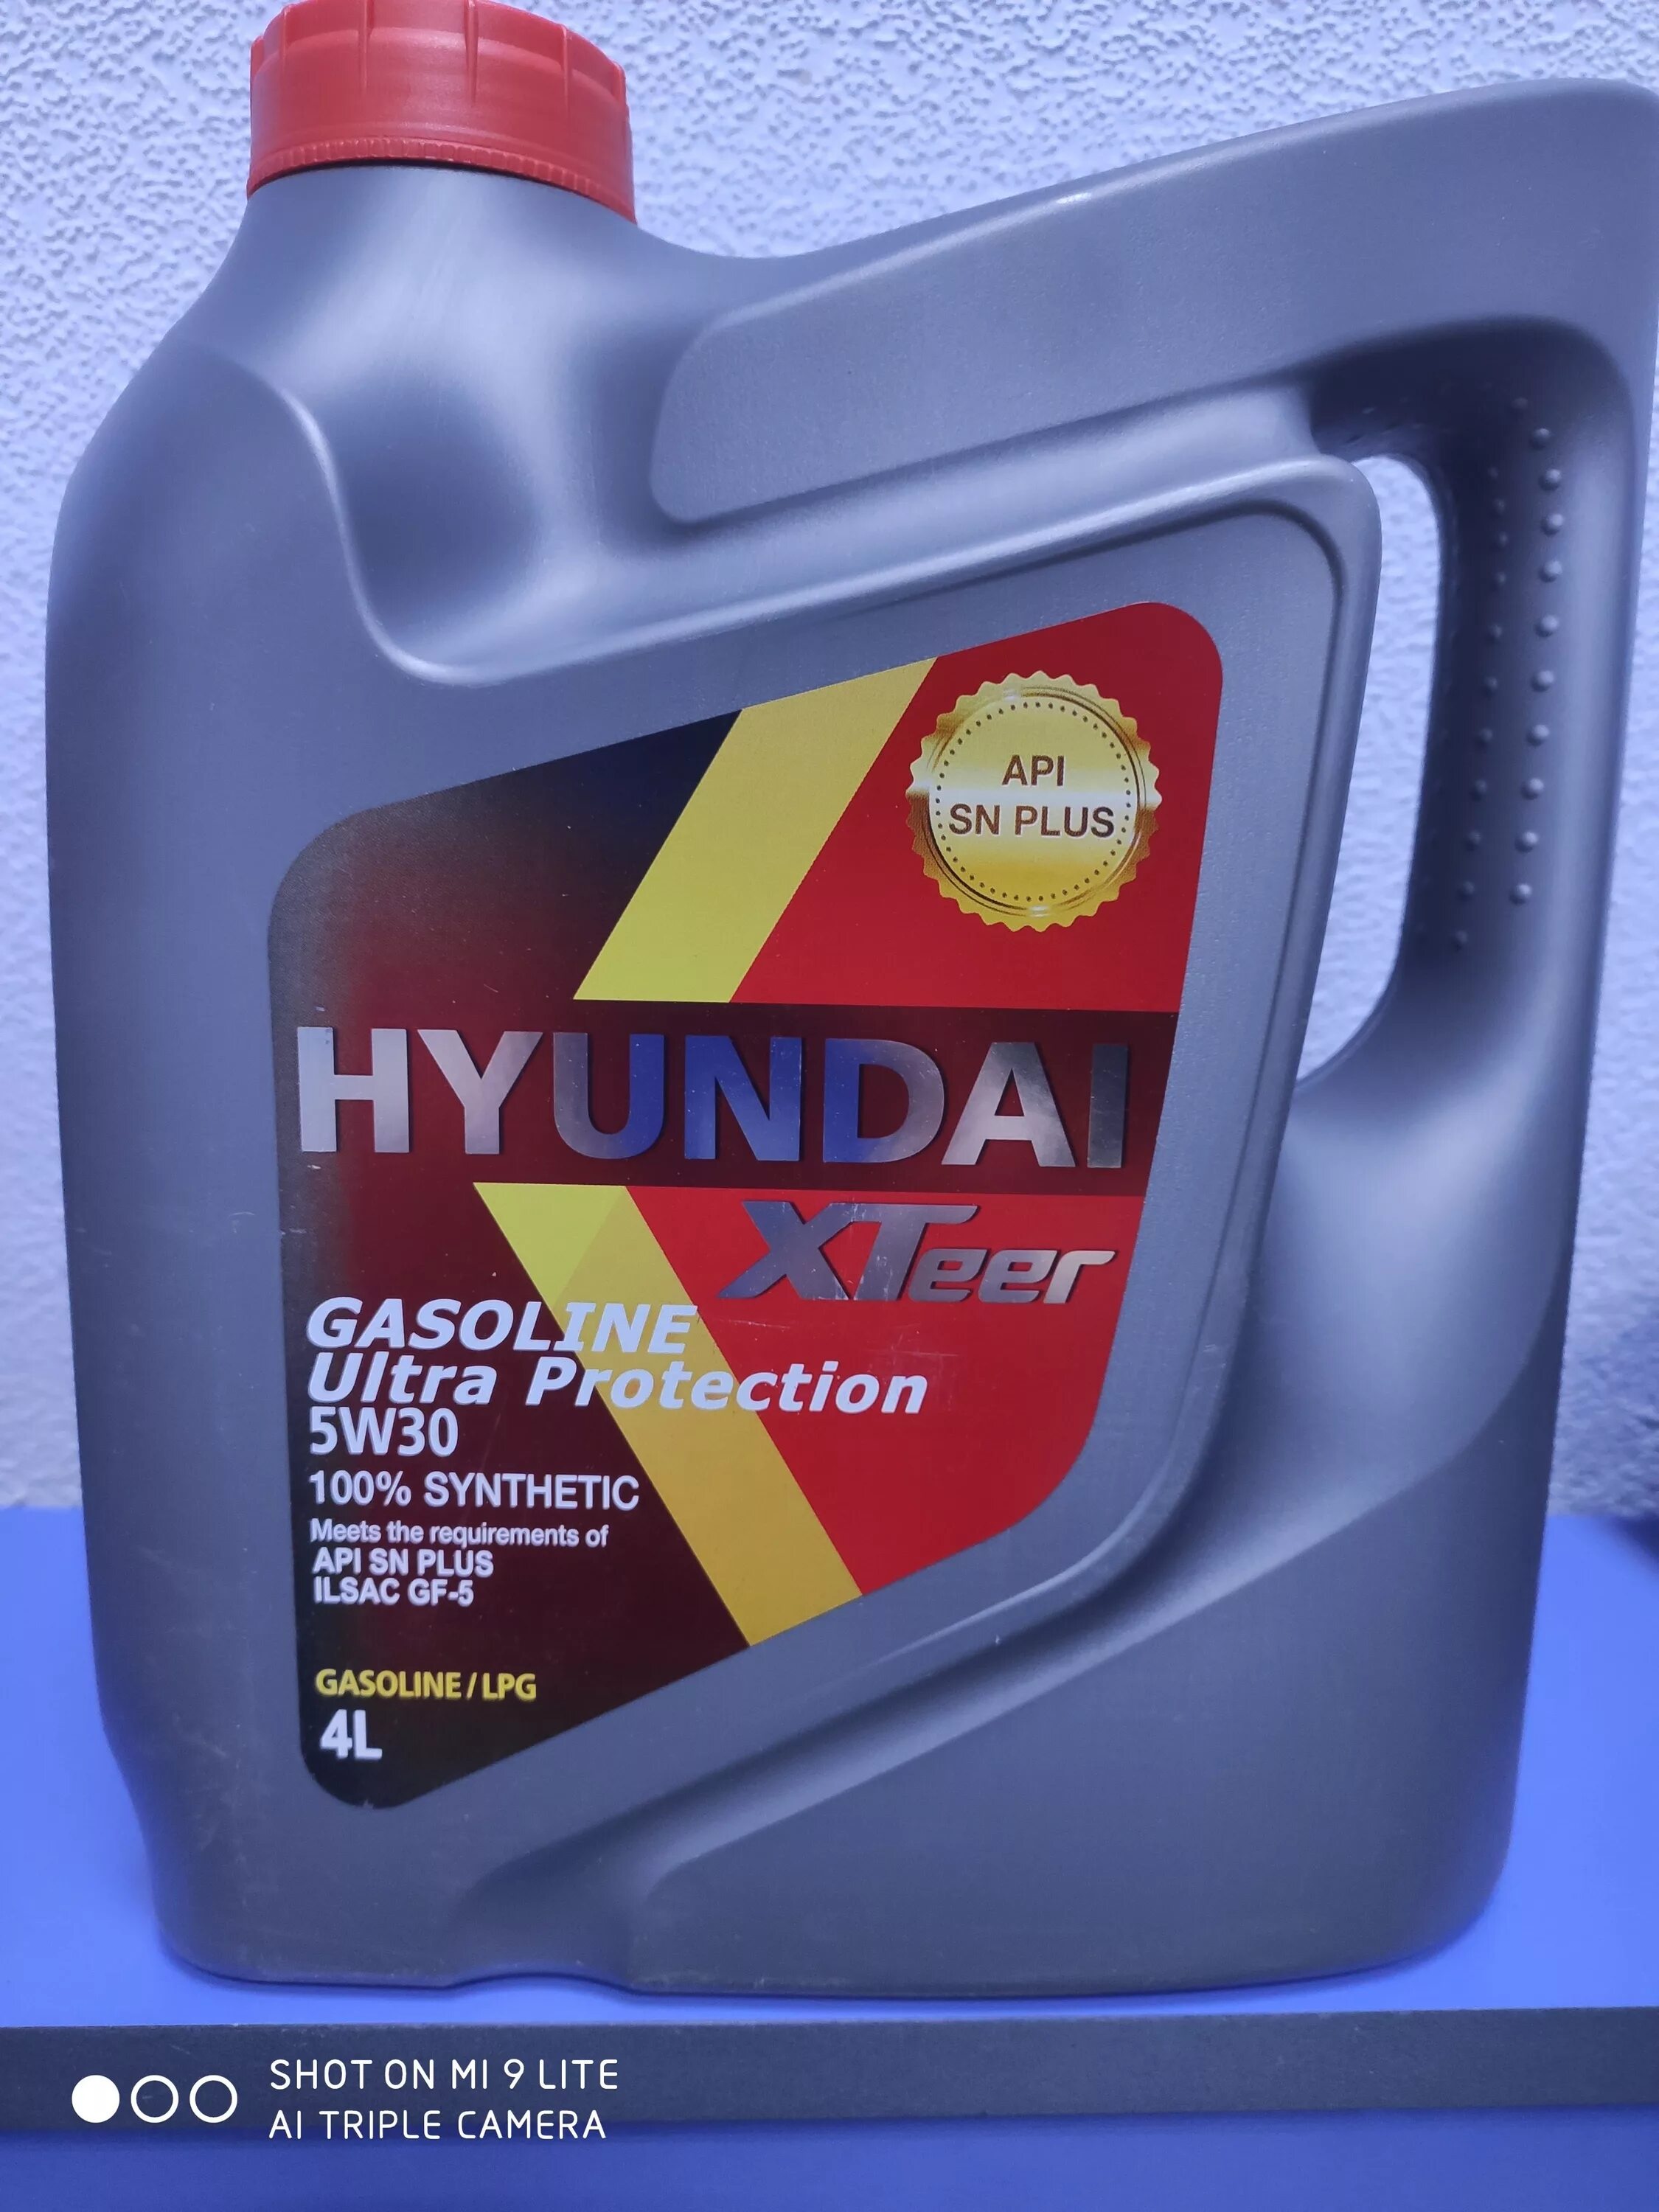 Hyundai xteer gasoline. Hyundai XTEER 5w30 4л. XTEER Hyundai 5w30 Ultra 4л артикул. Масло моторное Hyundai XTEER gasoline Ultra Protection 5w30 4л (1041002). Масло Hyundai 5w30 XTEER 4л.